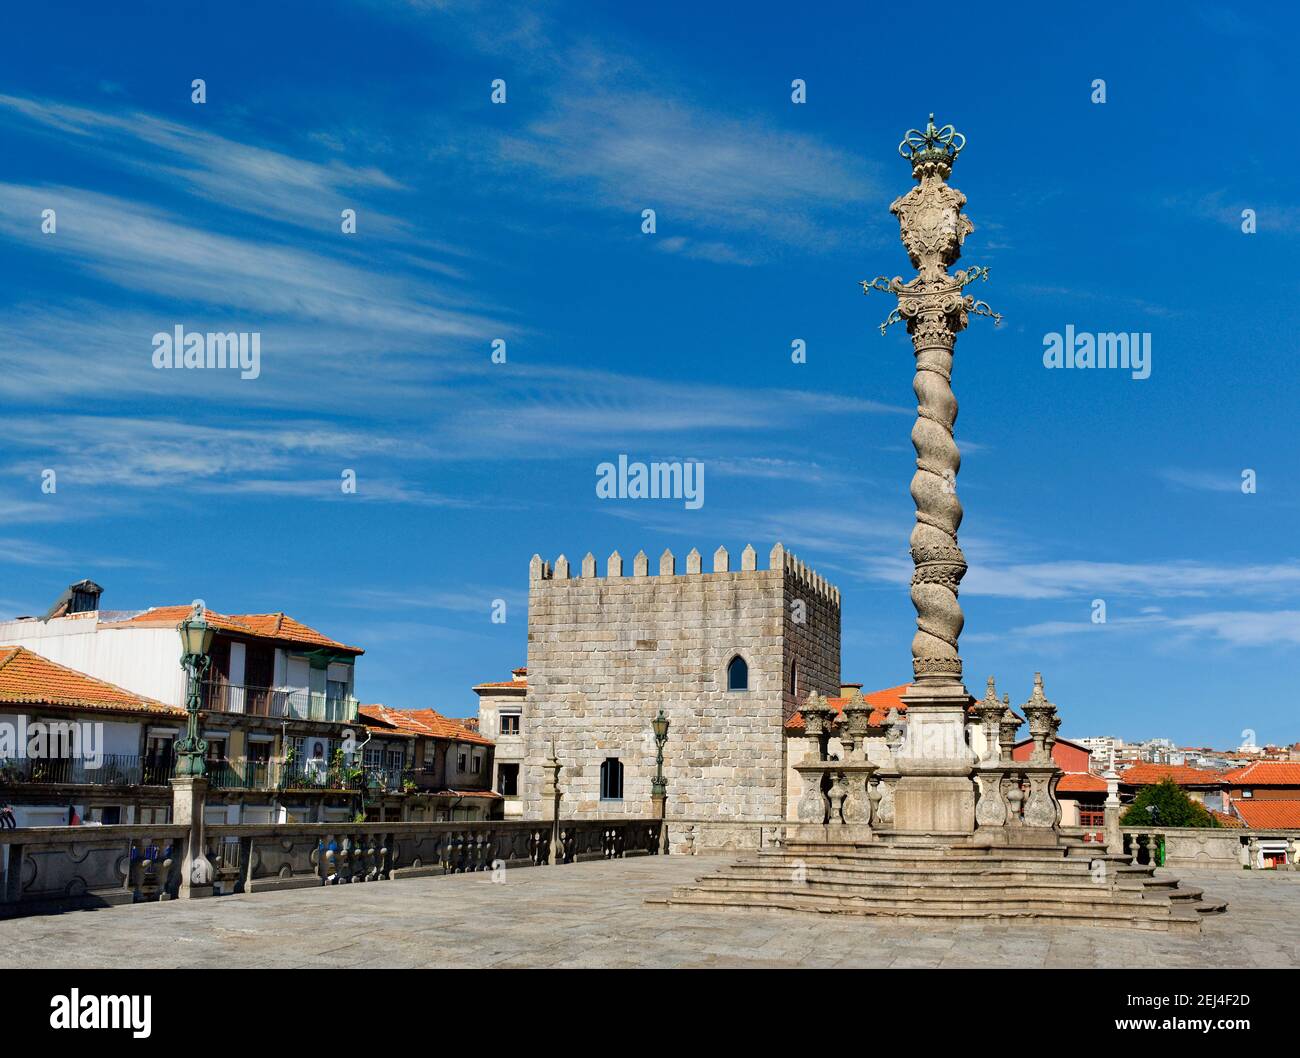 Portugal, Porto, die reich verzierte Säule oder Pranger (pelourinho) auf dem Domplatz - das Terreiro da Sé - mit einem restaurierten mittelalterlichen Turm Stockfoto